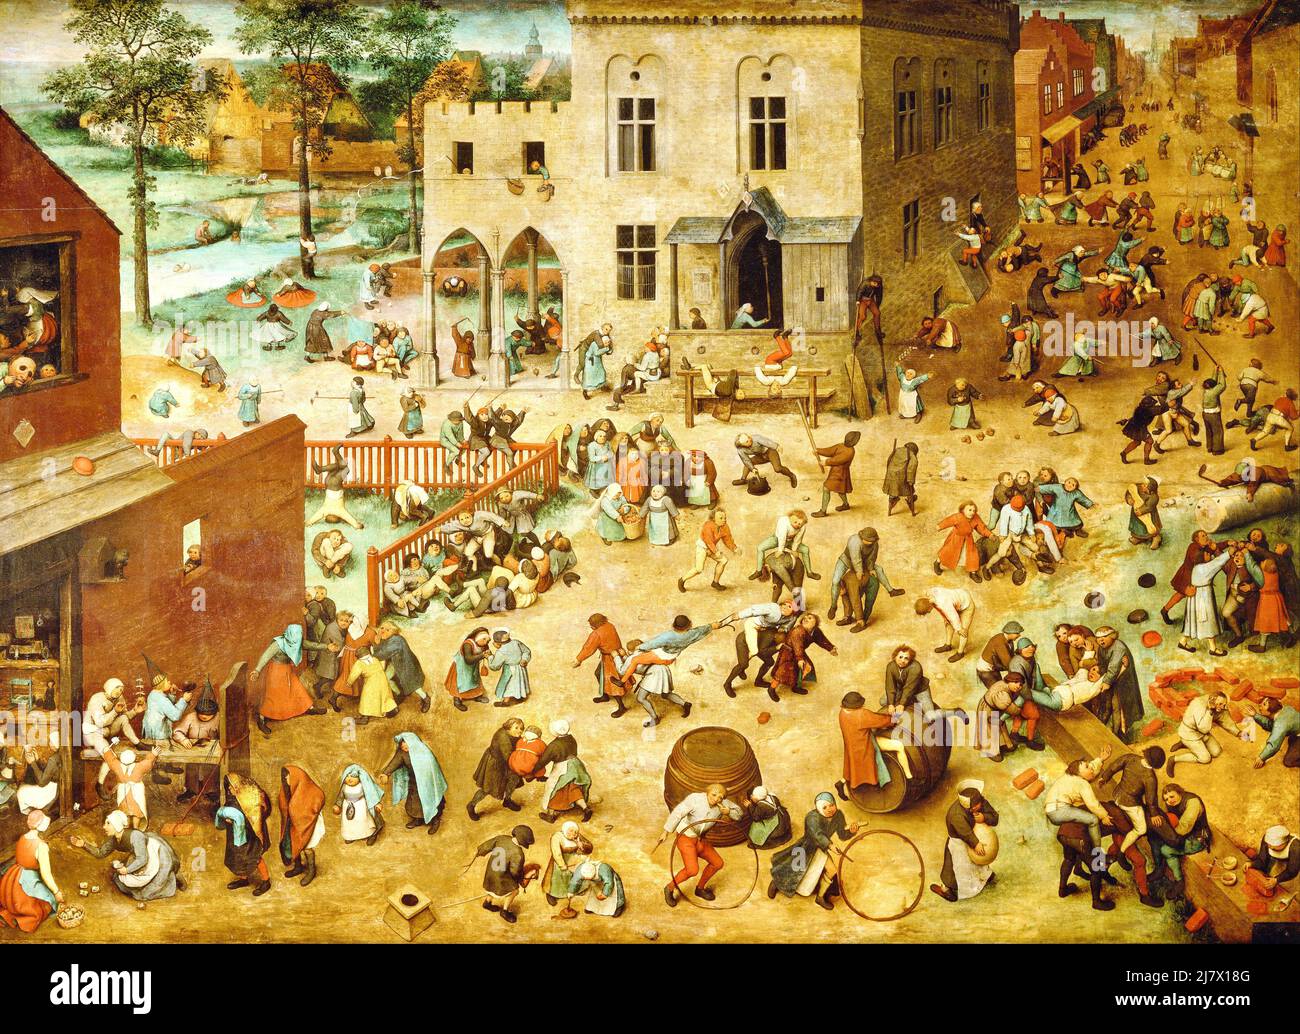 Pieter Bruegel the Elder - Children's Games - 1560 Stock Photo